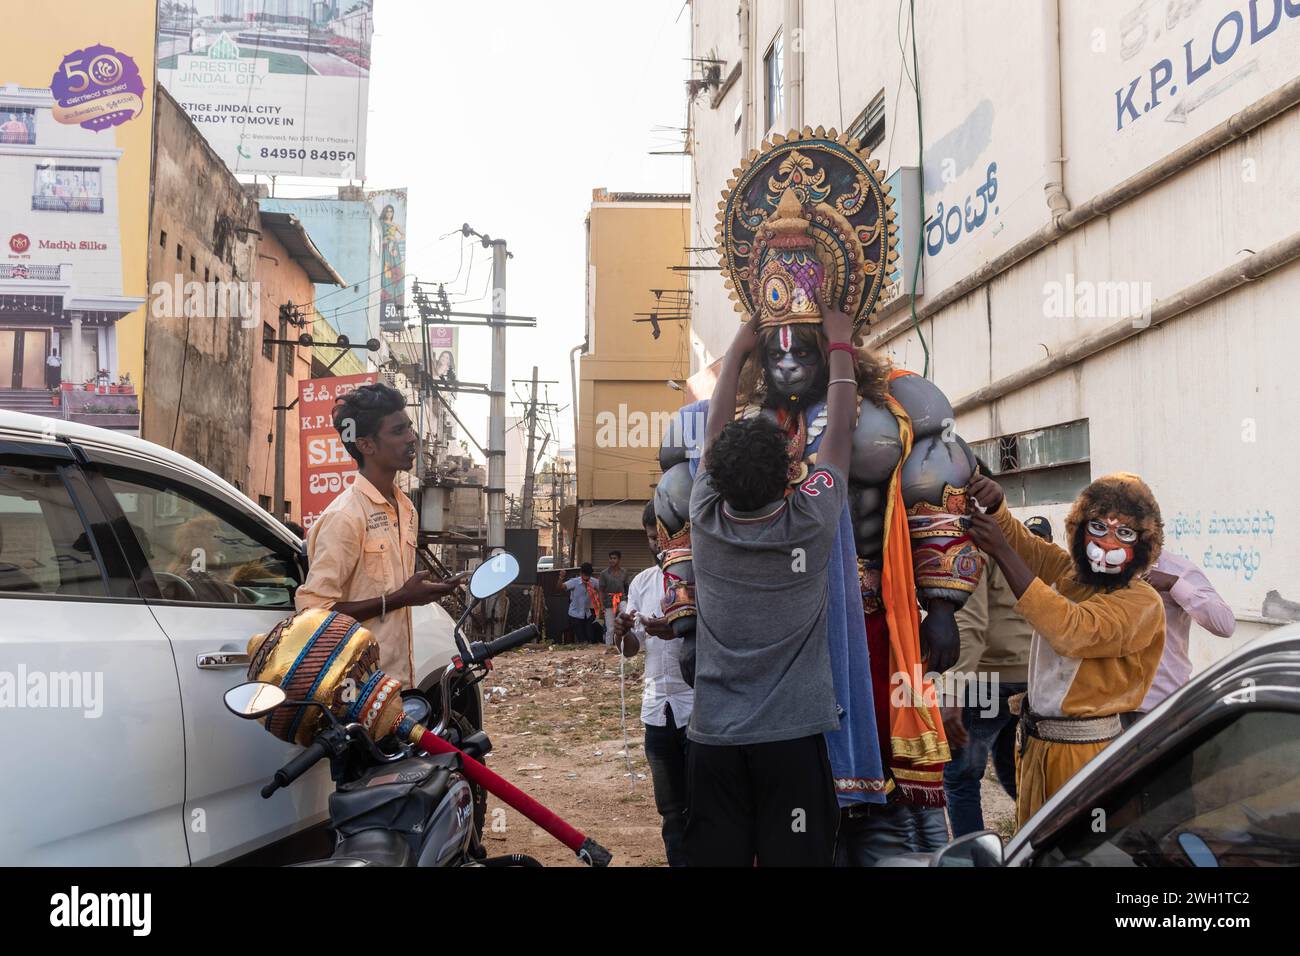 Hassan, Karnataka, Inde - 10 janvier 2023 : un homme habillé comme la divinité hindoue Hanuman dans une rue de la ville, participant à un festival culturel. Banque D'Images